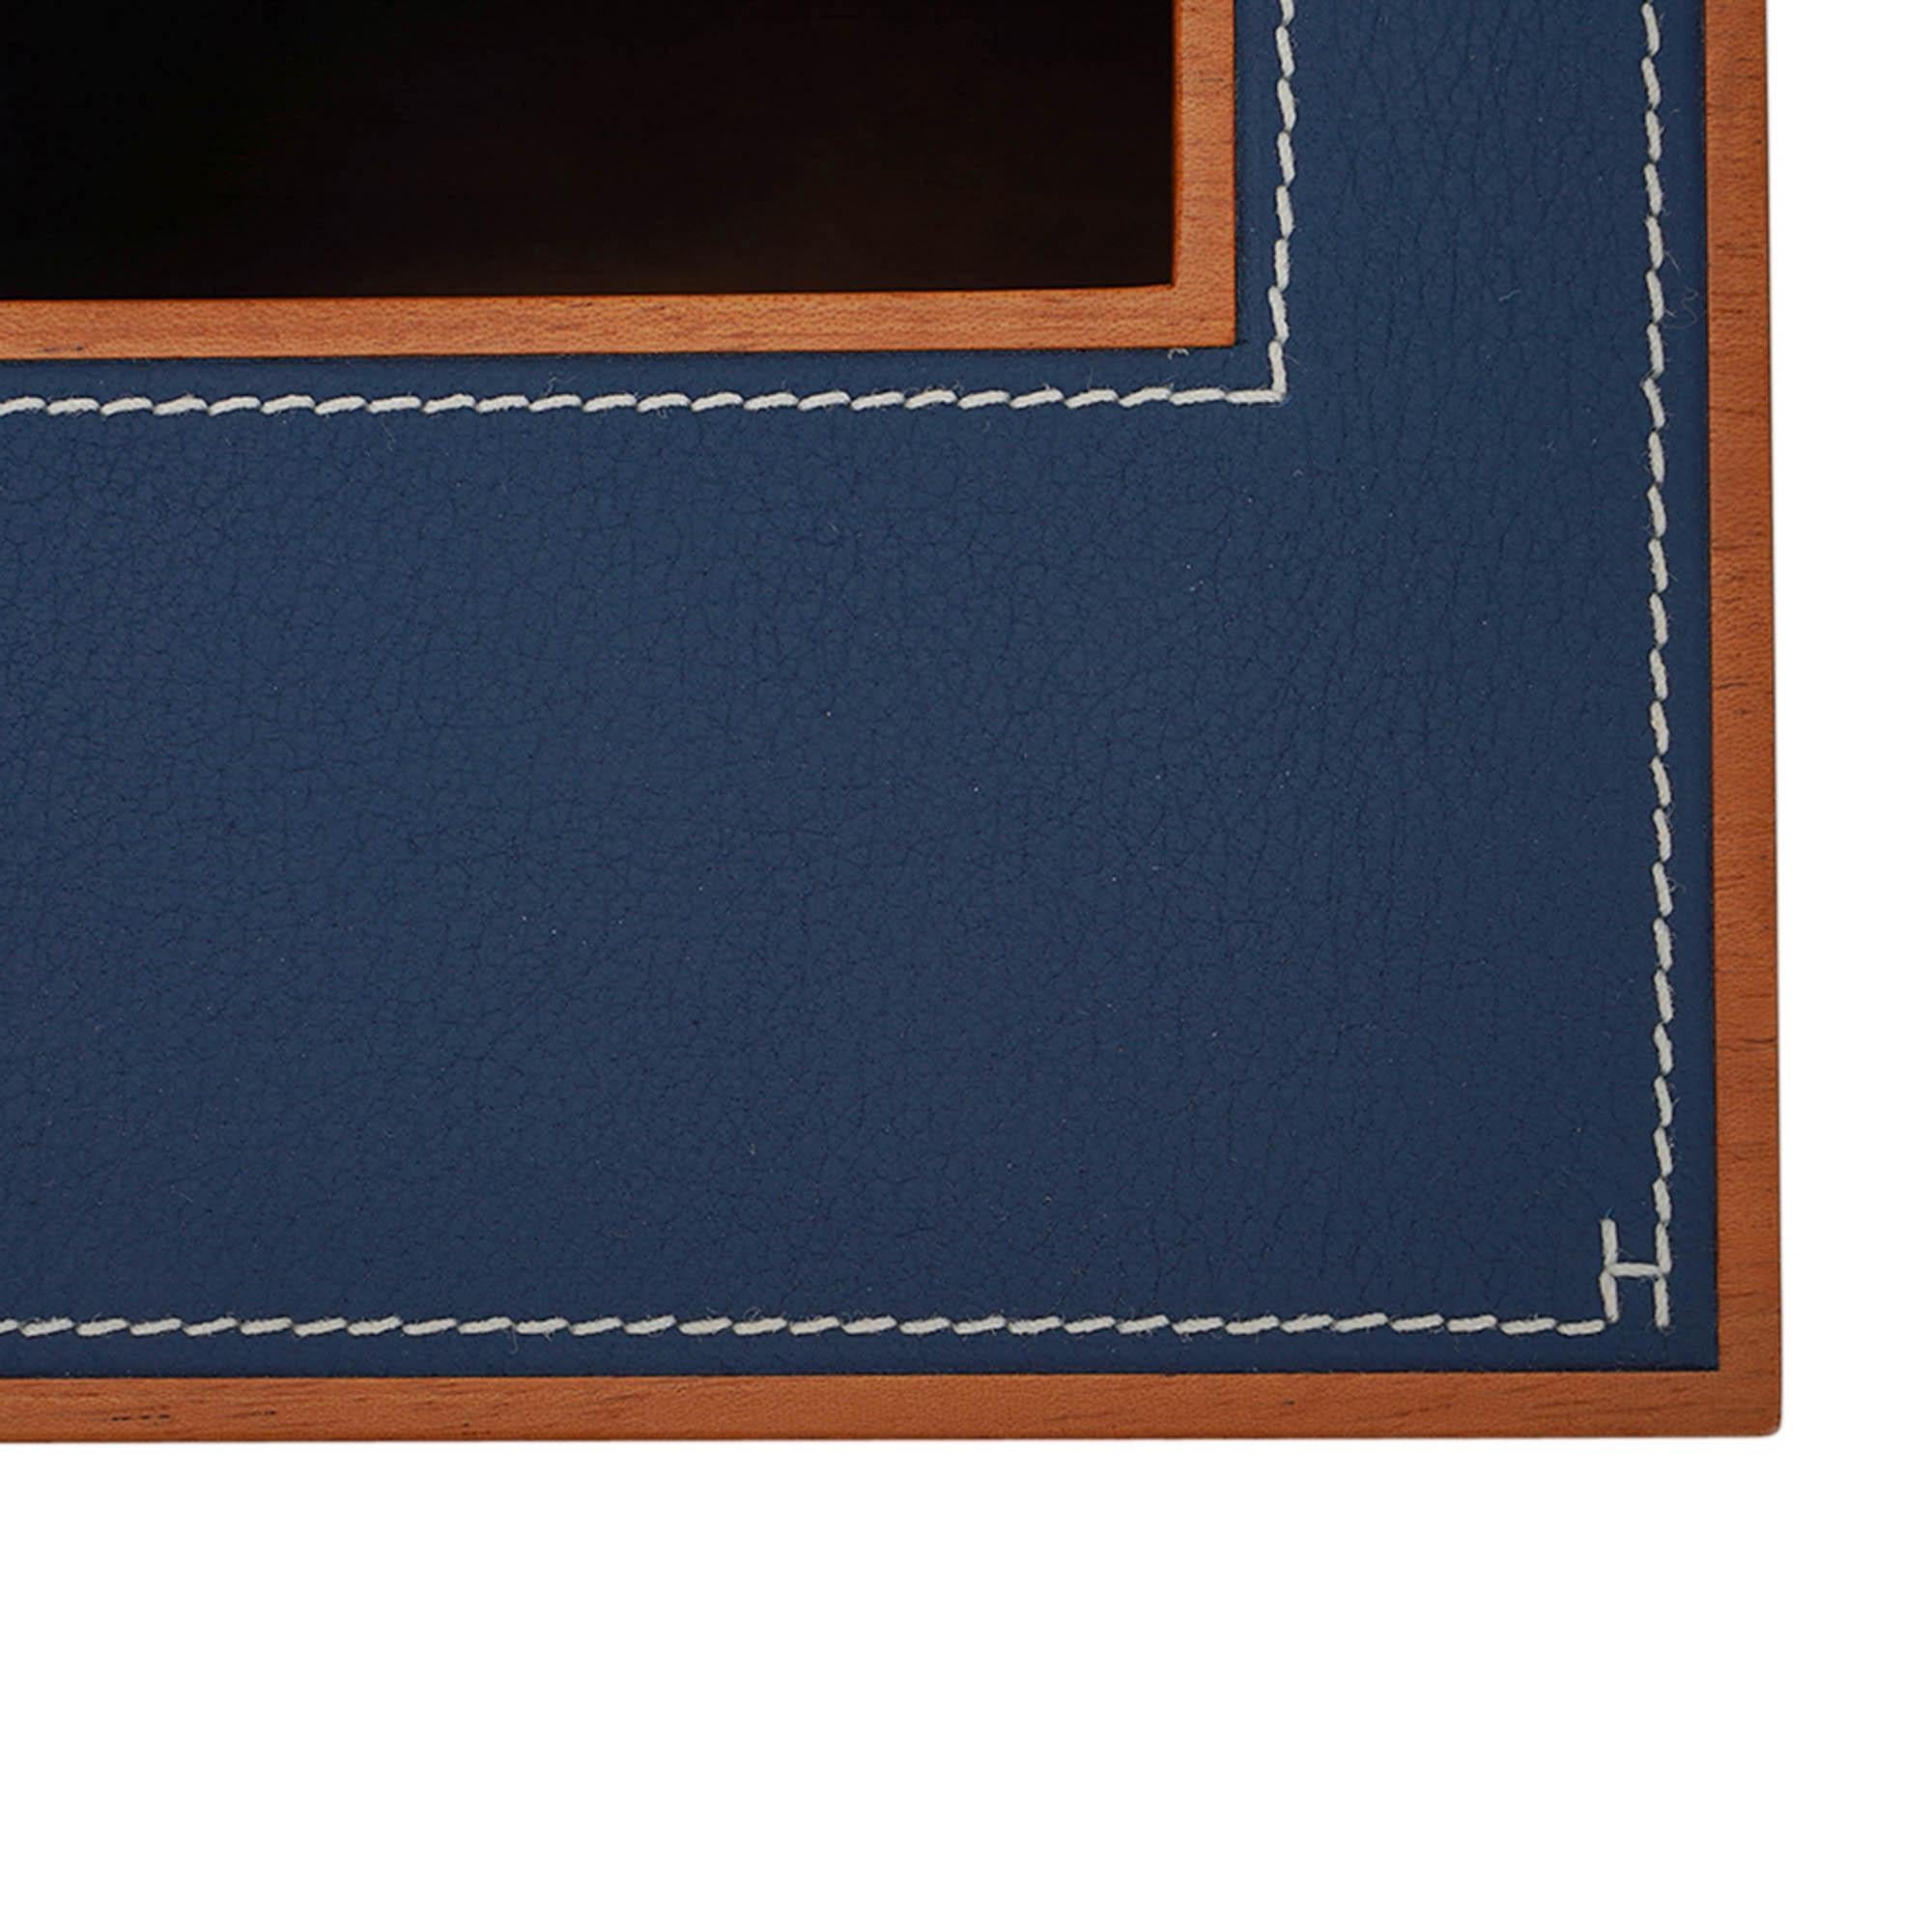 Mightychic bietet eine Hermes Pleiade Square Tissue Box in Mahagoni und Bleu Regate Taurillon Leder.
Modern und elegant mit weißer Steppnaht auf dem Leder.
Jede Schachtel ist in einer Ecke mit einem H in weißem Faden signiert.
Kommt mit